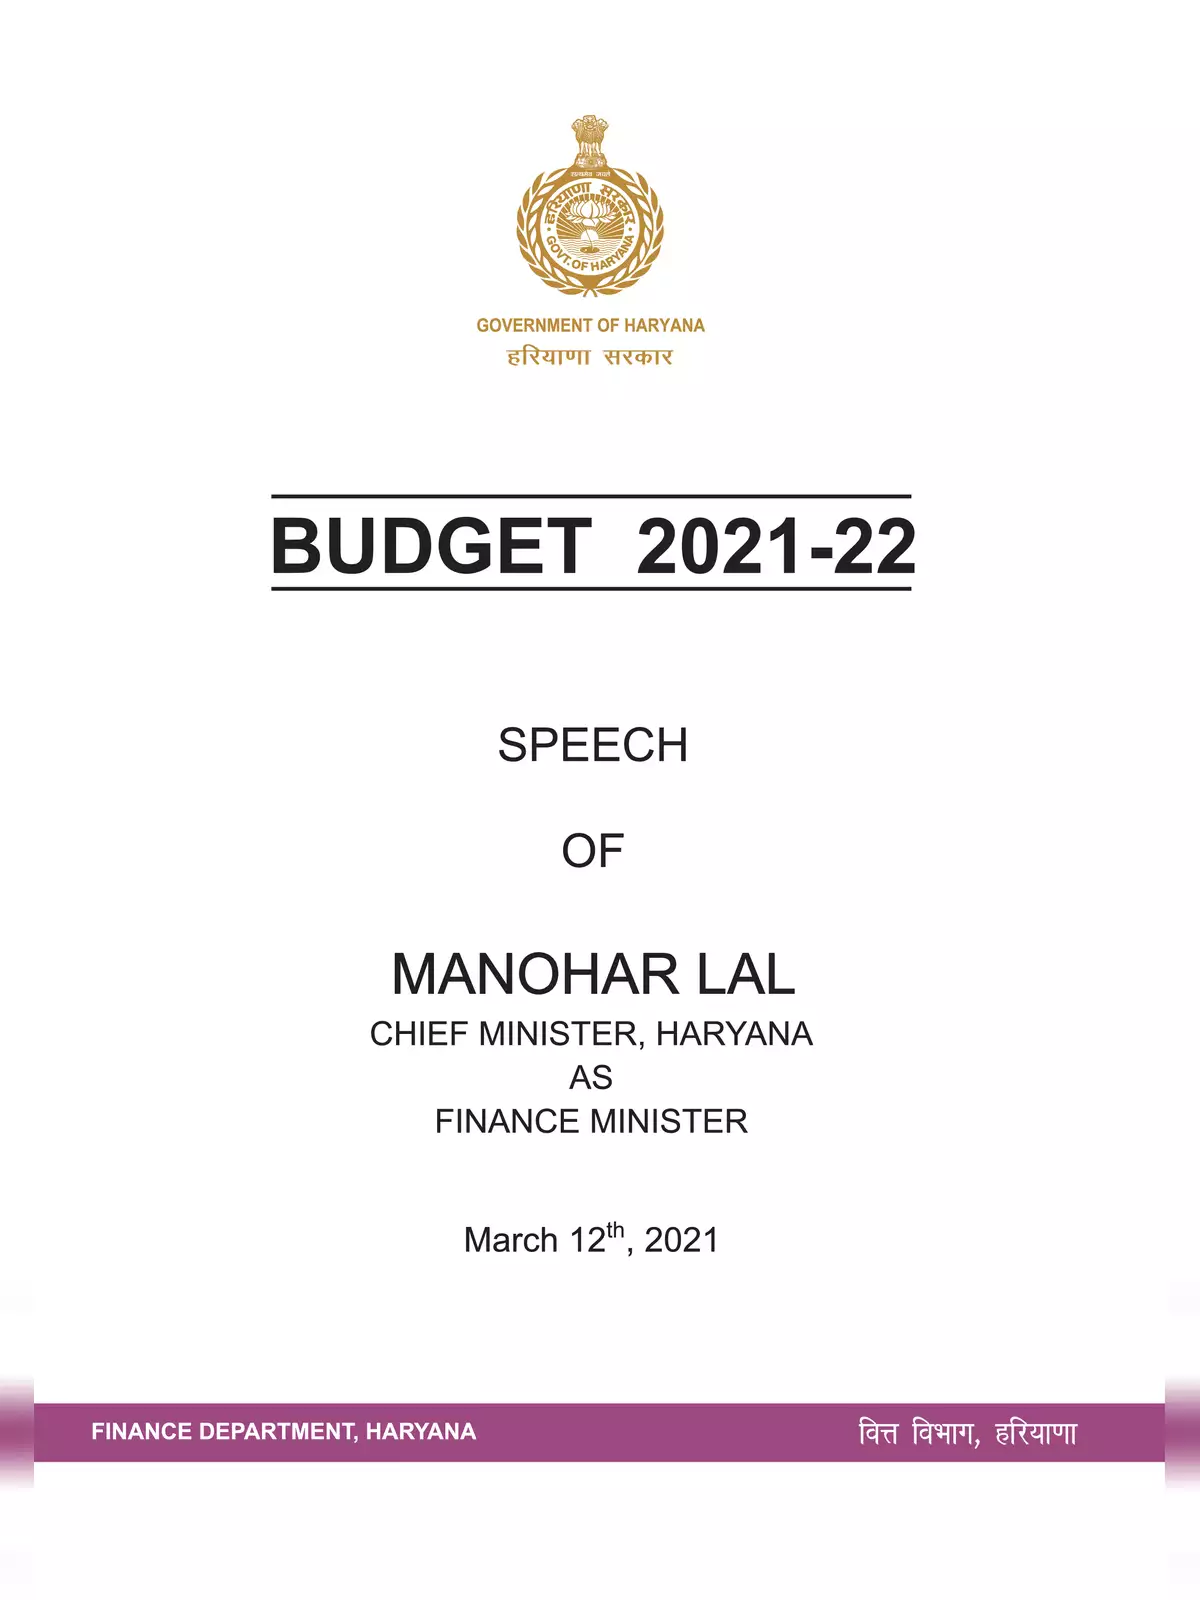 Haryana Budget 2021-22